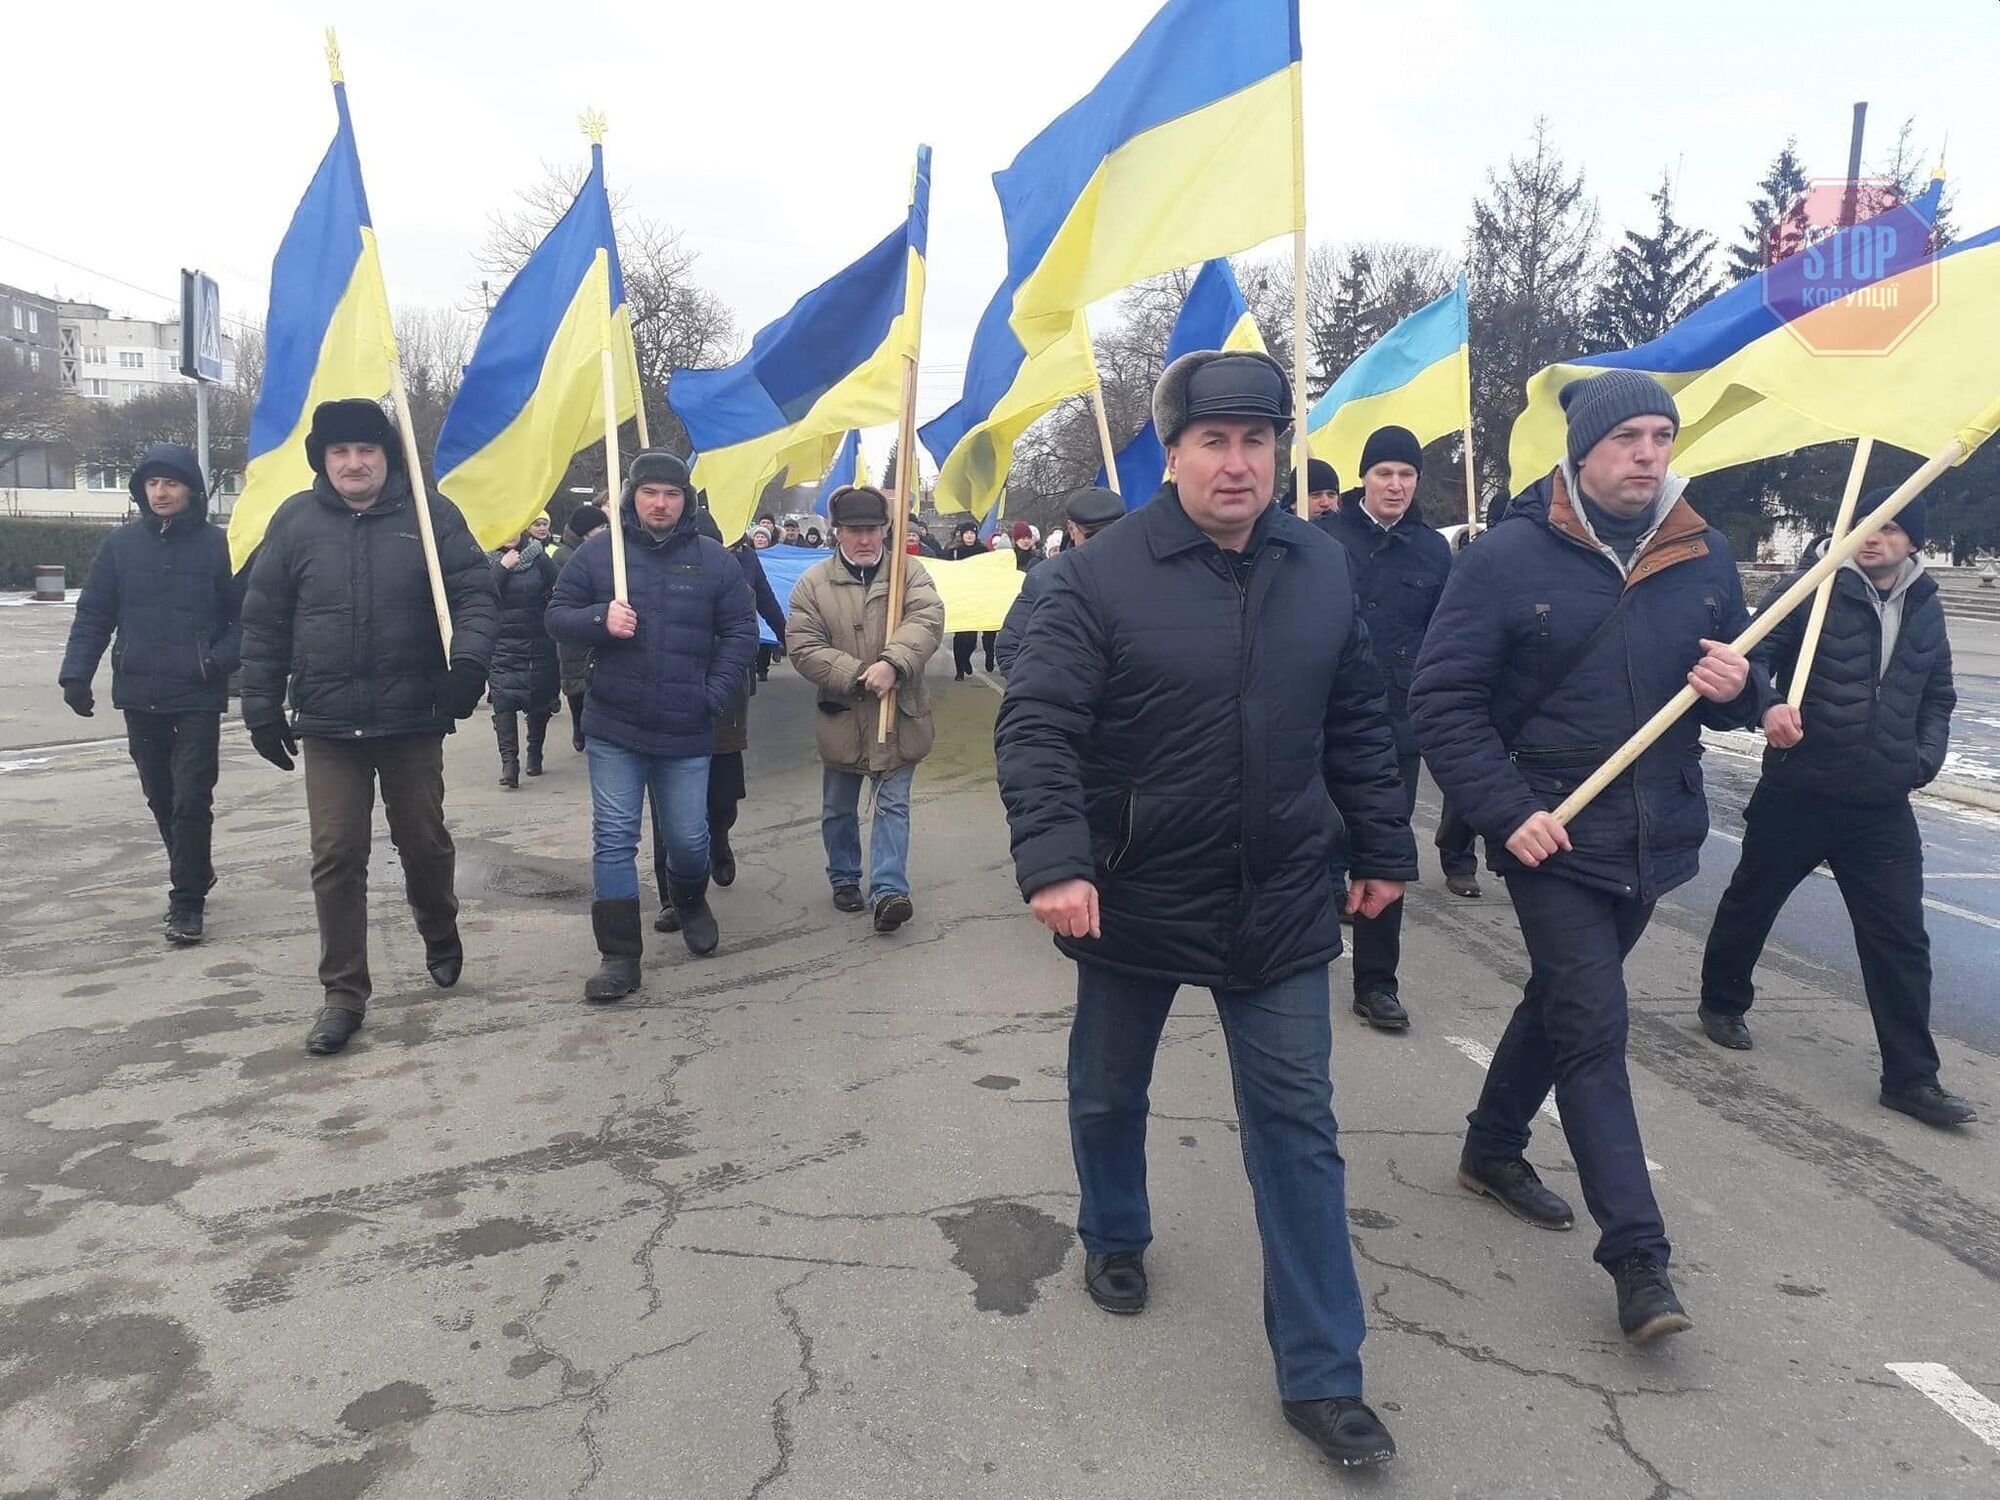  Жителі міста Городня вийшли з прапорами України попри окупацію